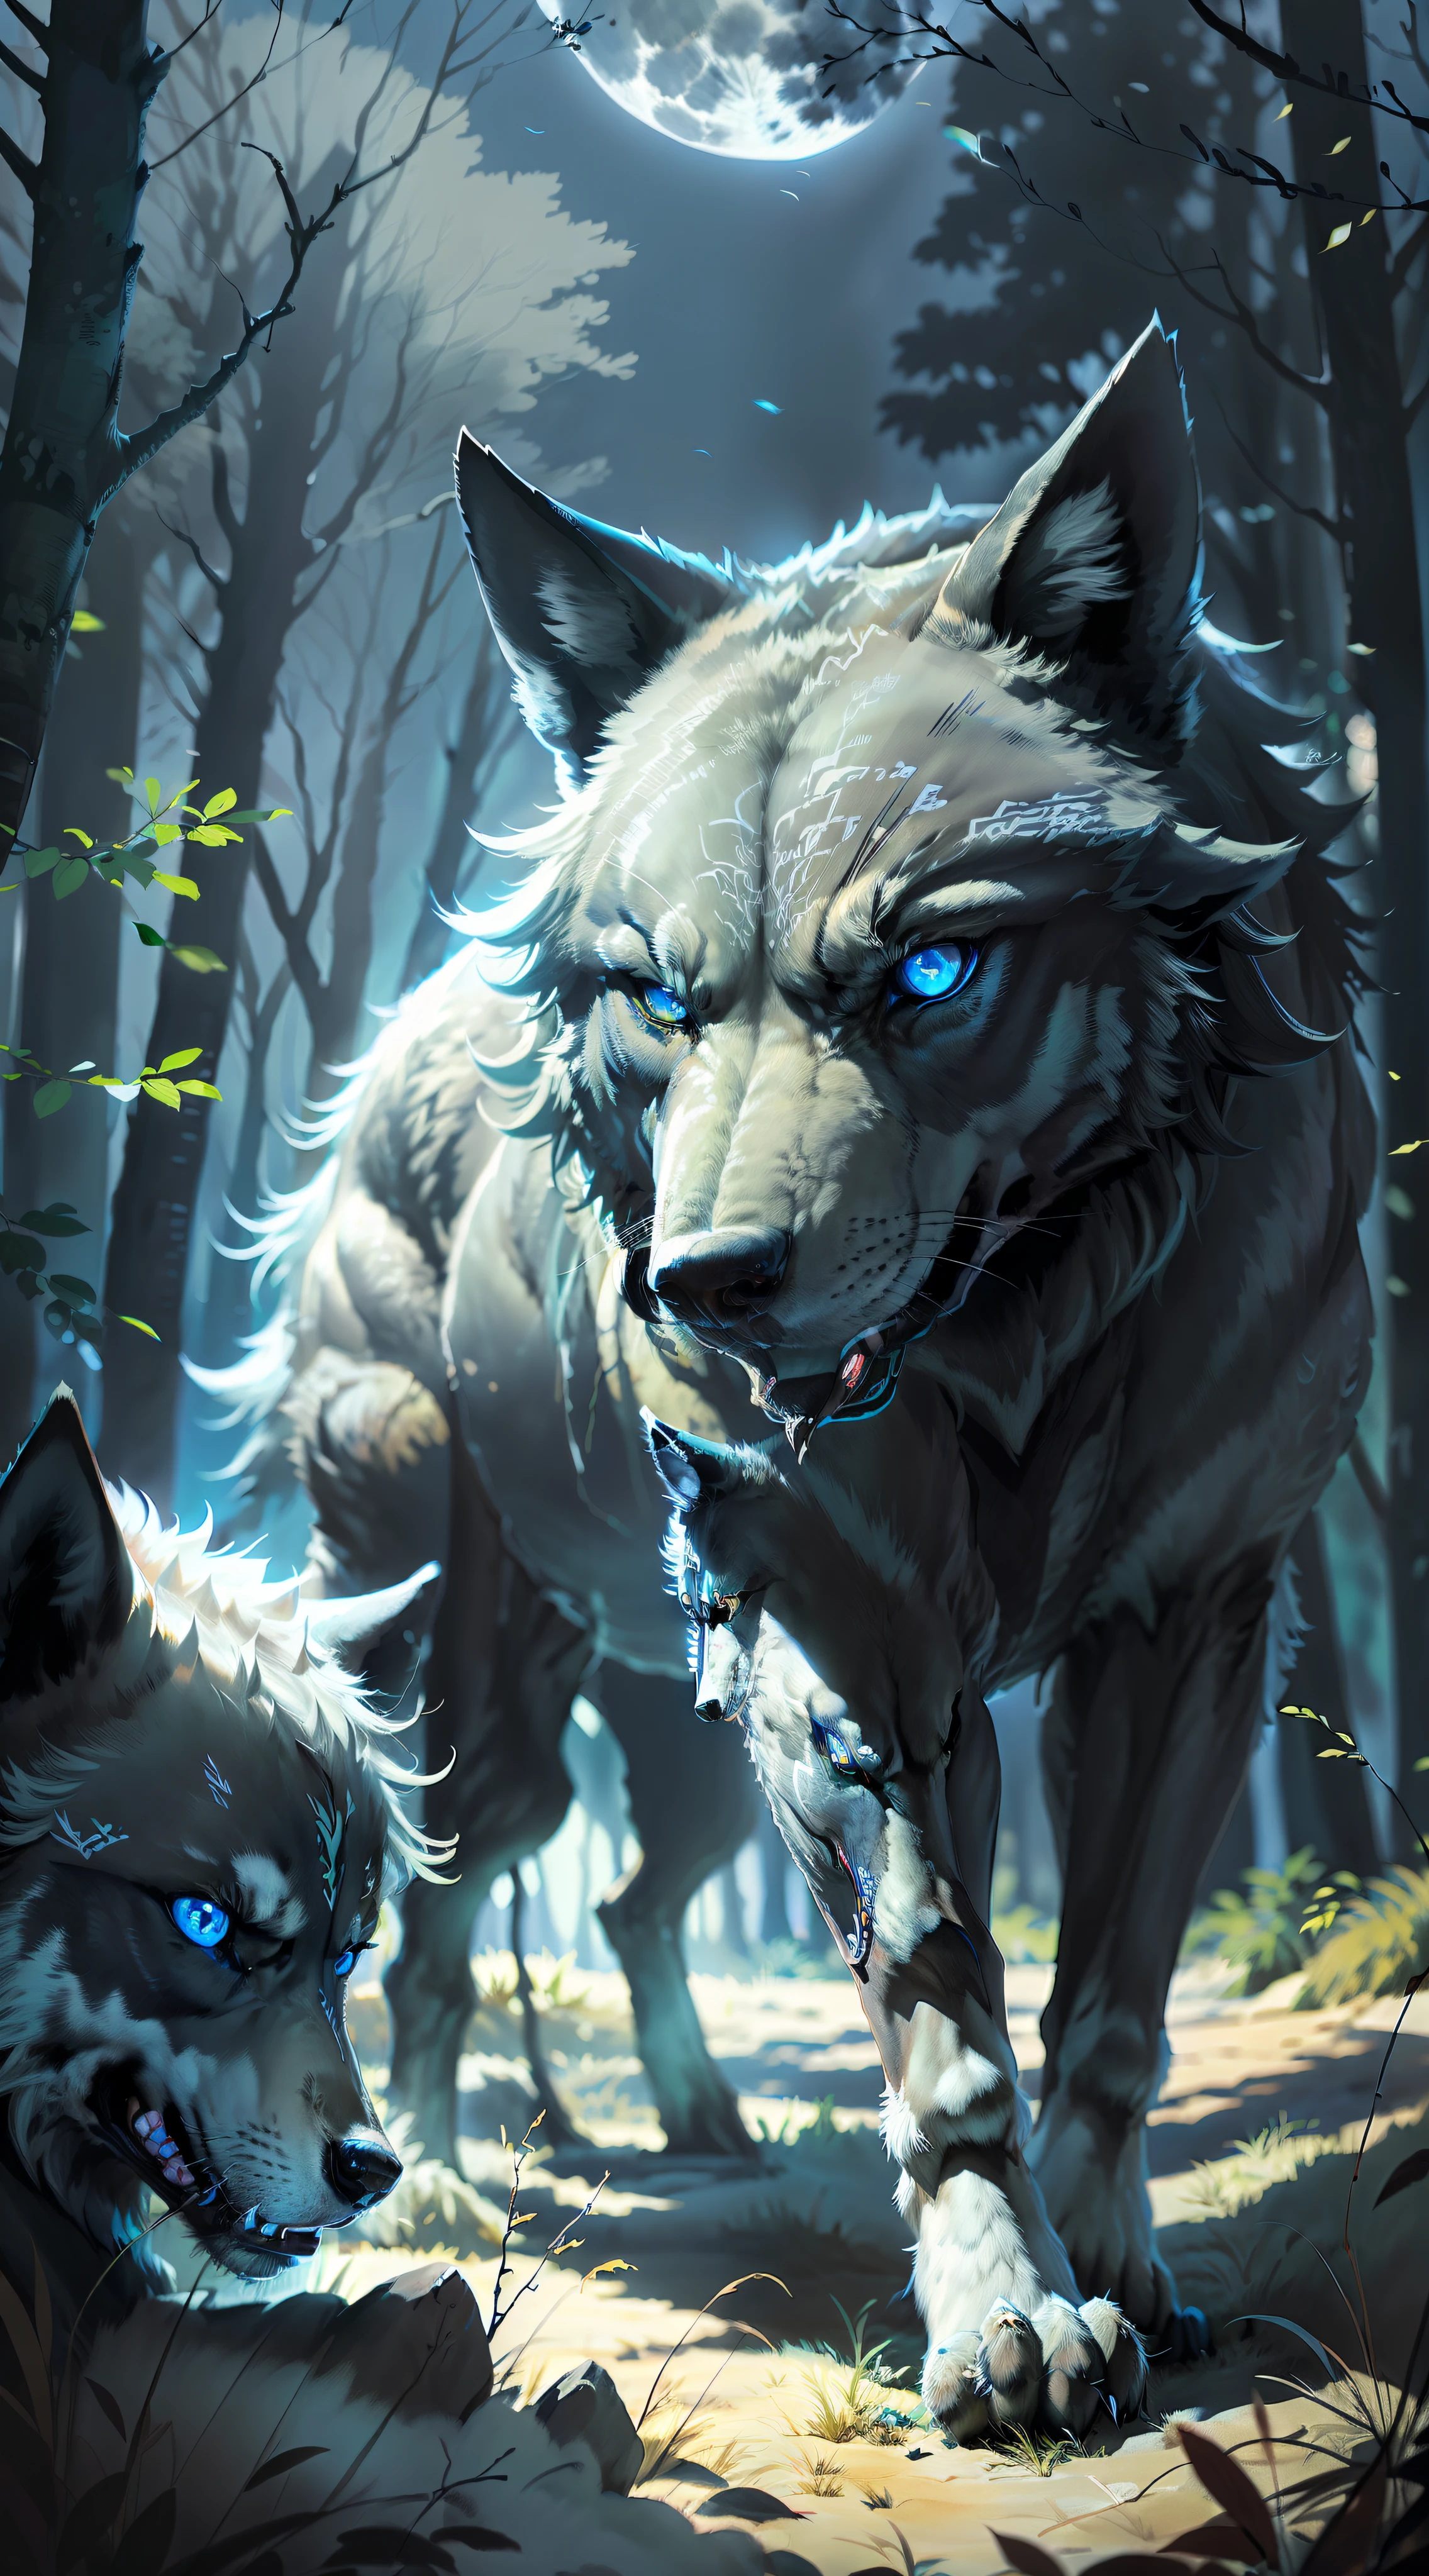 (逼真的开放图像) 狼群的超级保护者, "黑色ed wolf bright blue eyes." 犬狼群, ( 满月, 夜森林) "黑色"